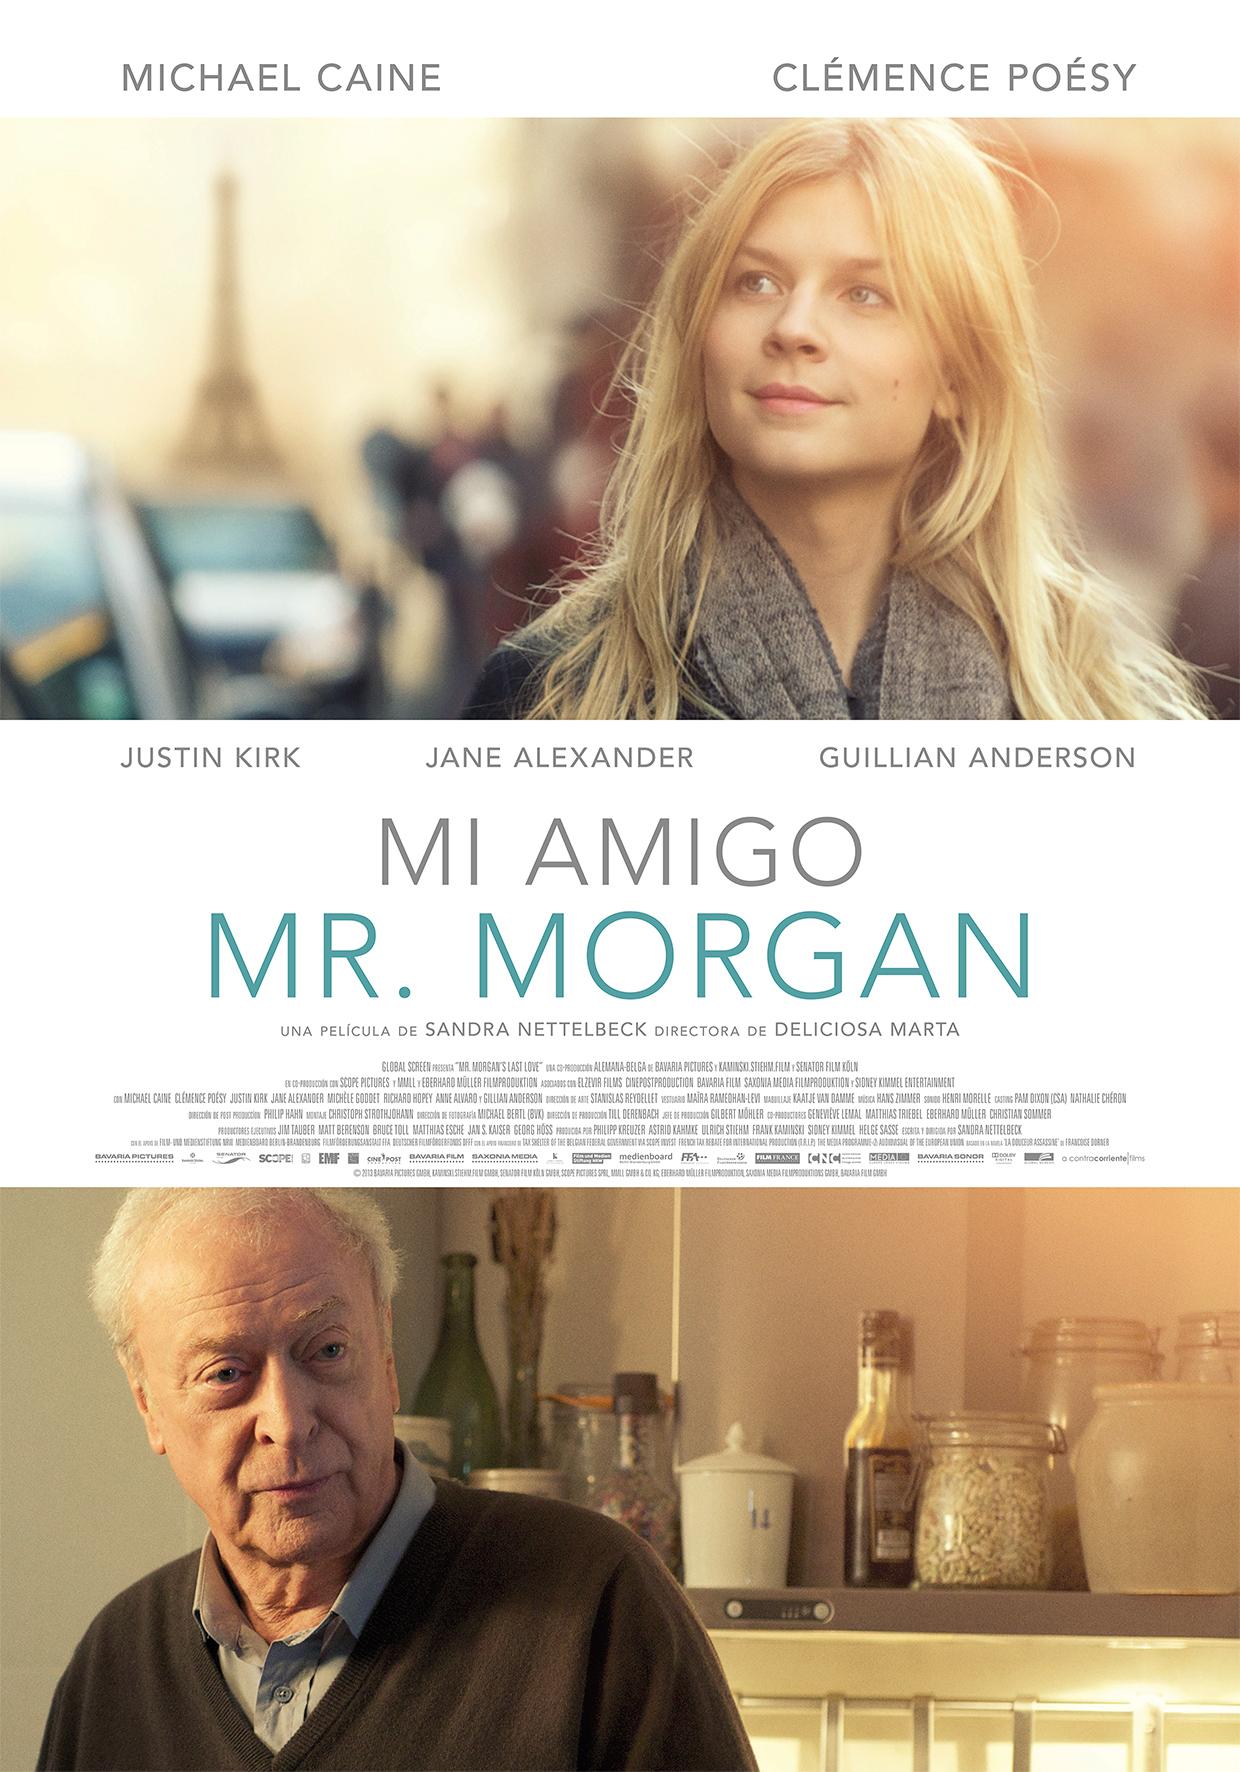 Постер фильма Последняя любовь мистера Моргана | Mr. Morgan's Last Love